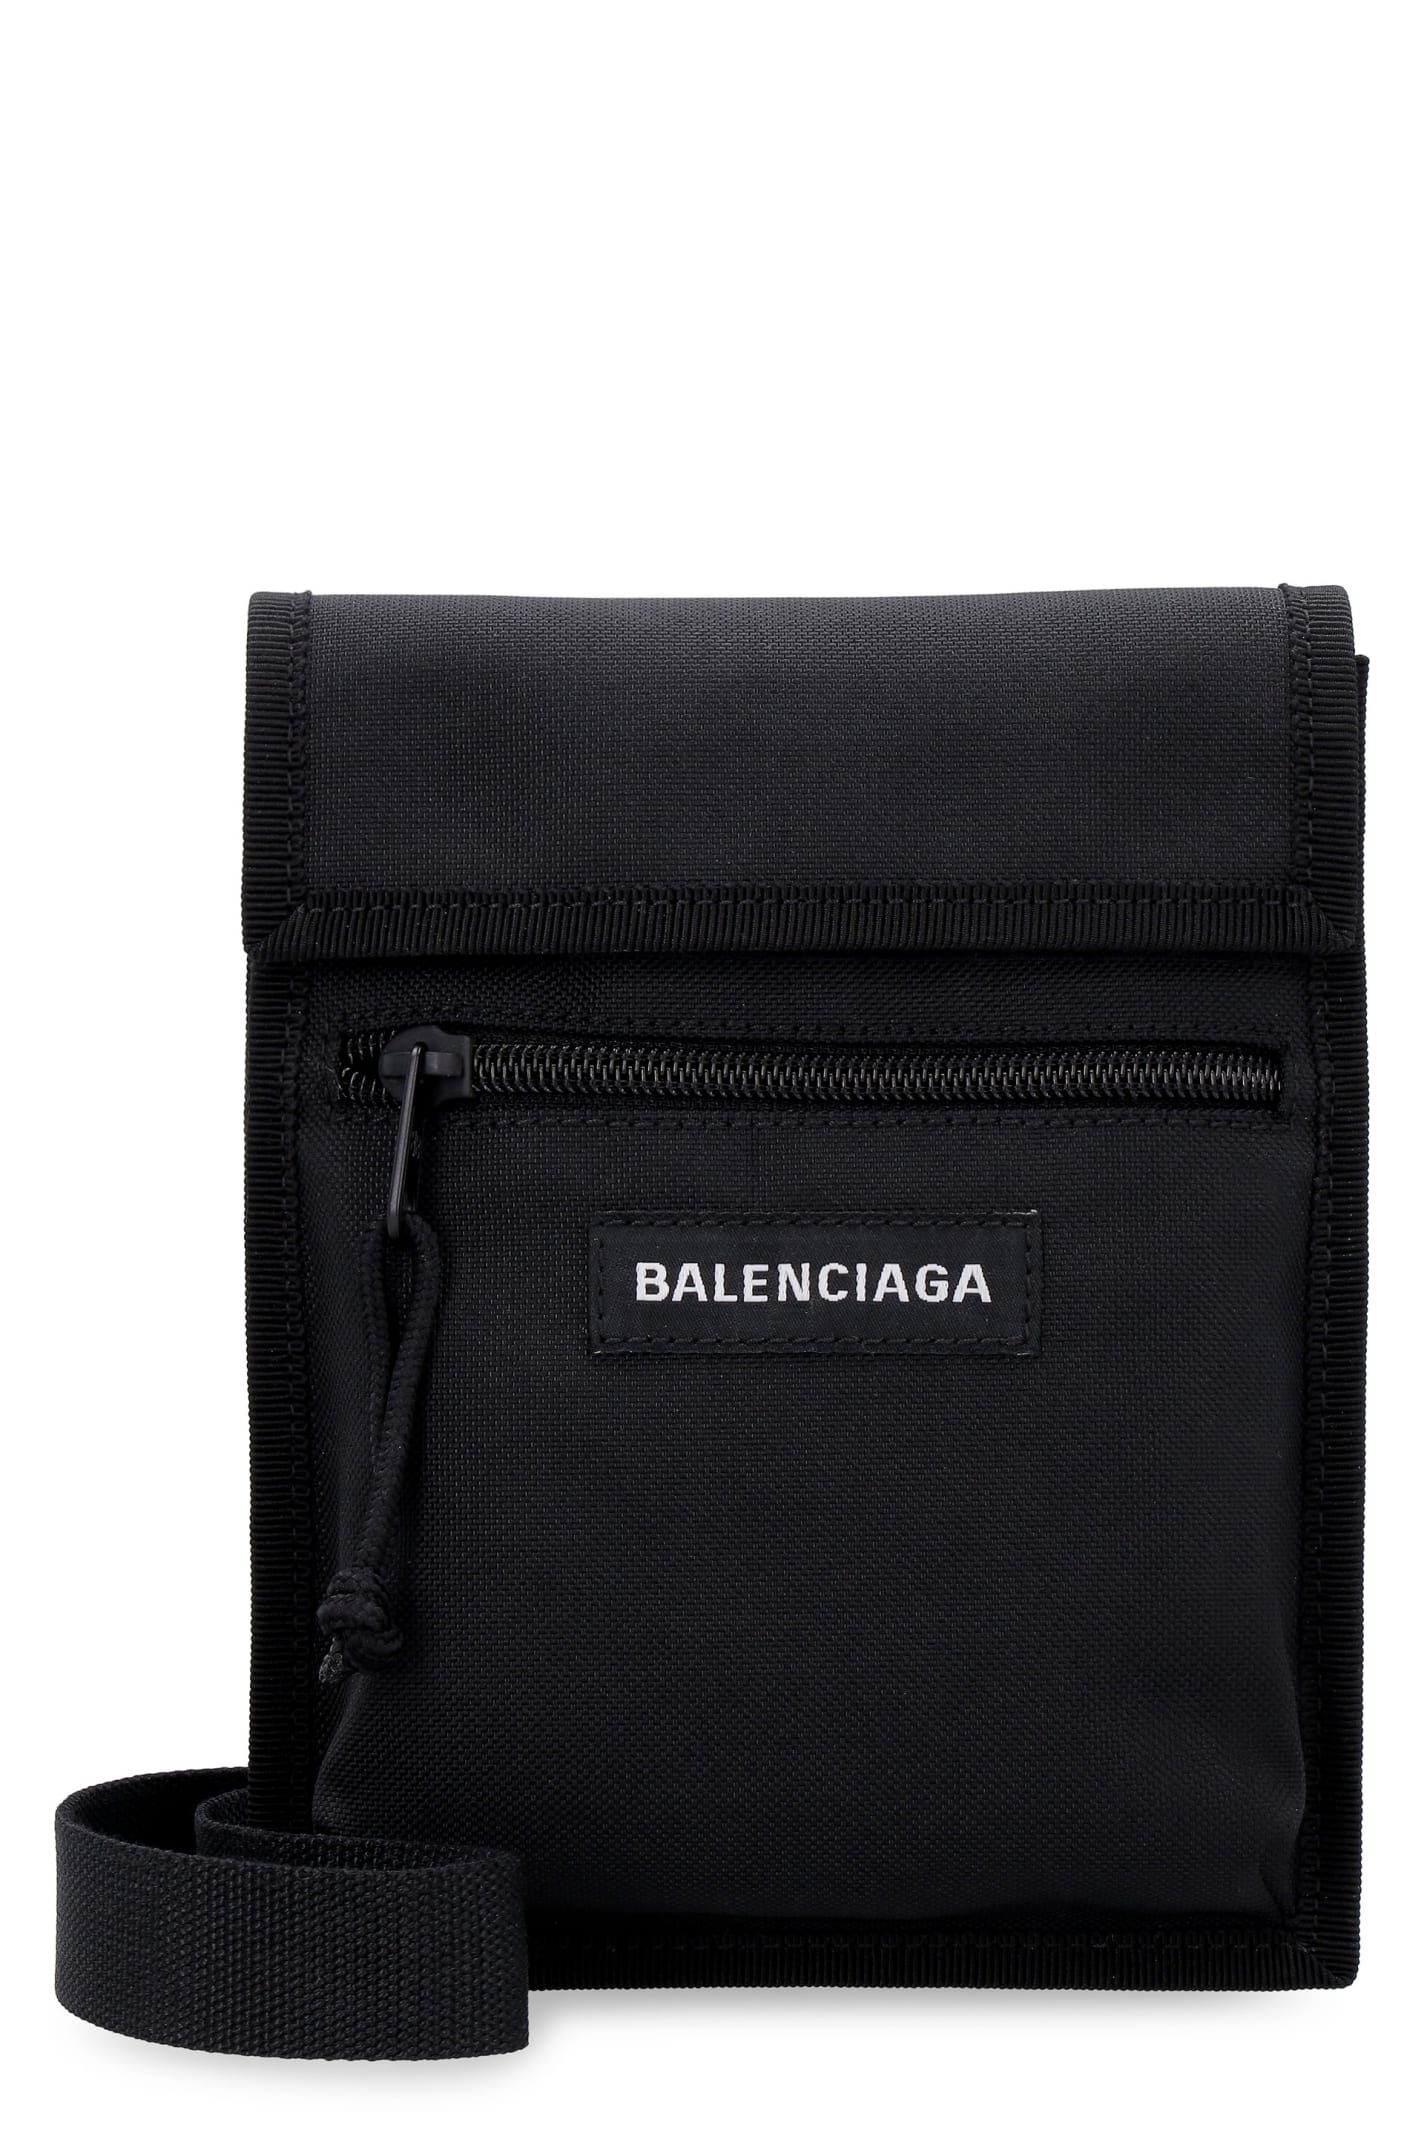 Balenciaga Nylon Messenger-bag